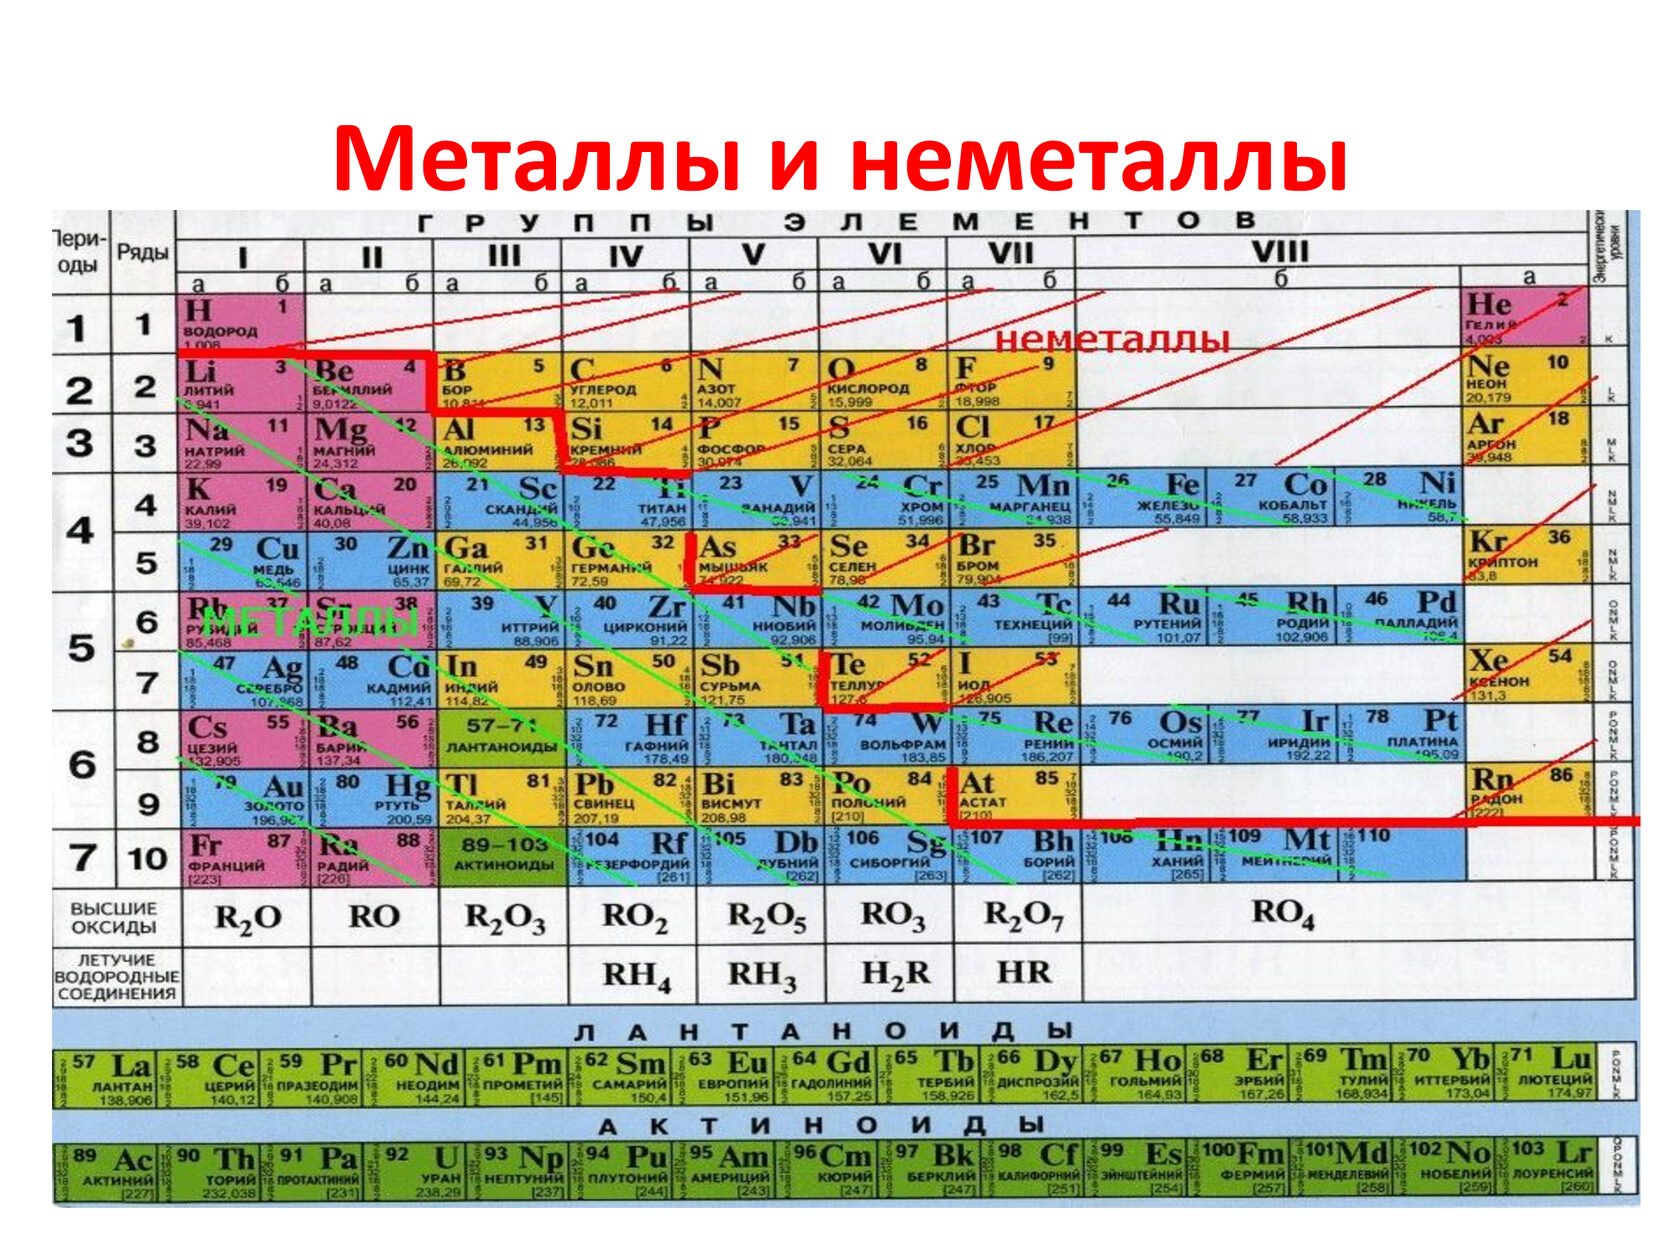 235 какой элемент. Таблица Менделеева металлы и неметаллы. Химия металлы и неметаллы таблица. Химические элементы металлы и неметаллы. Таблица элементов Менделеева металлы и неметаллы.